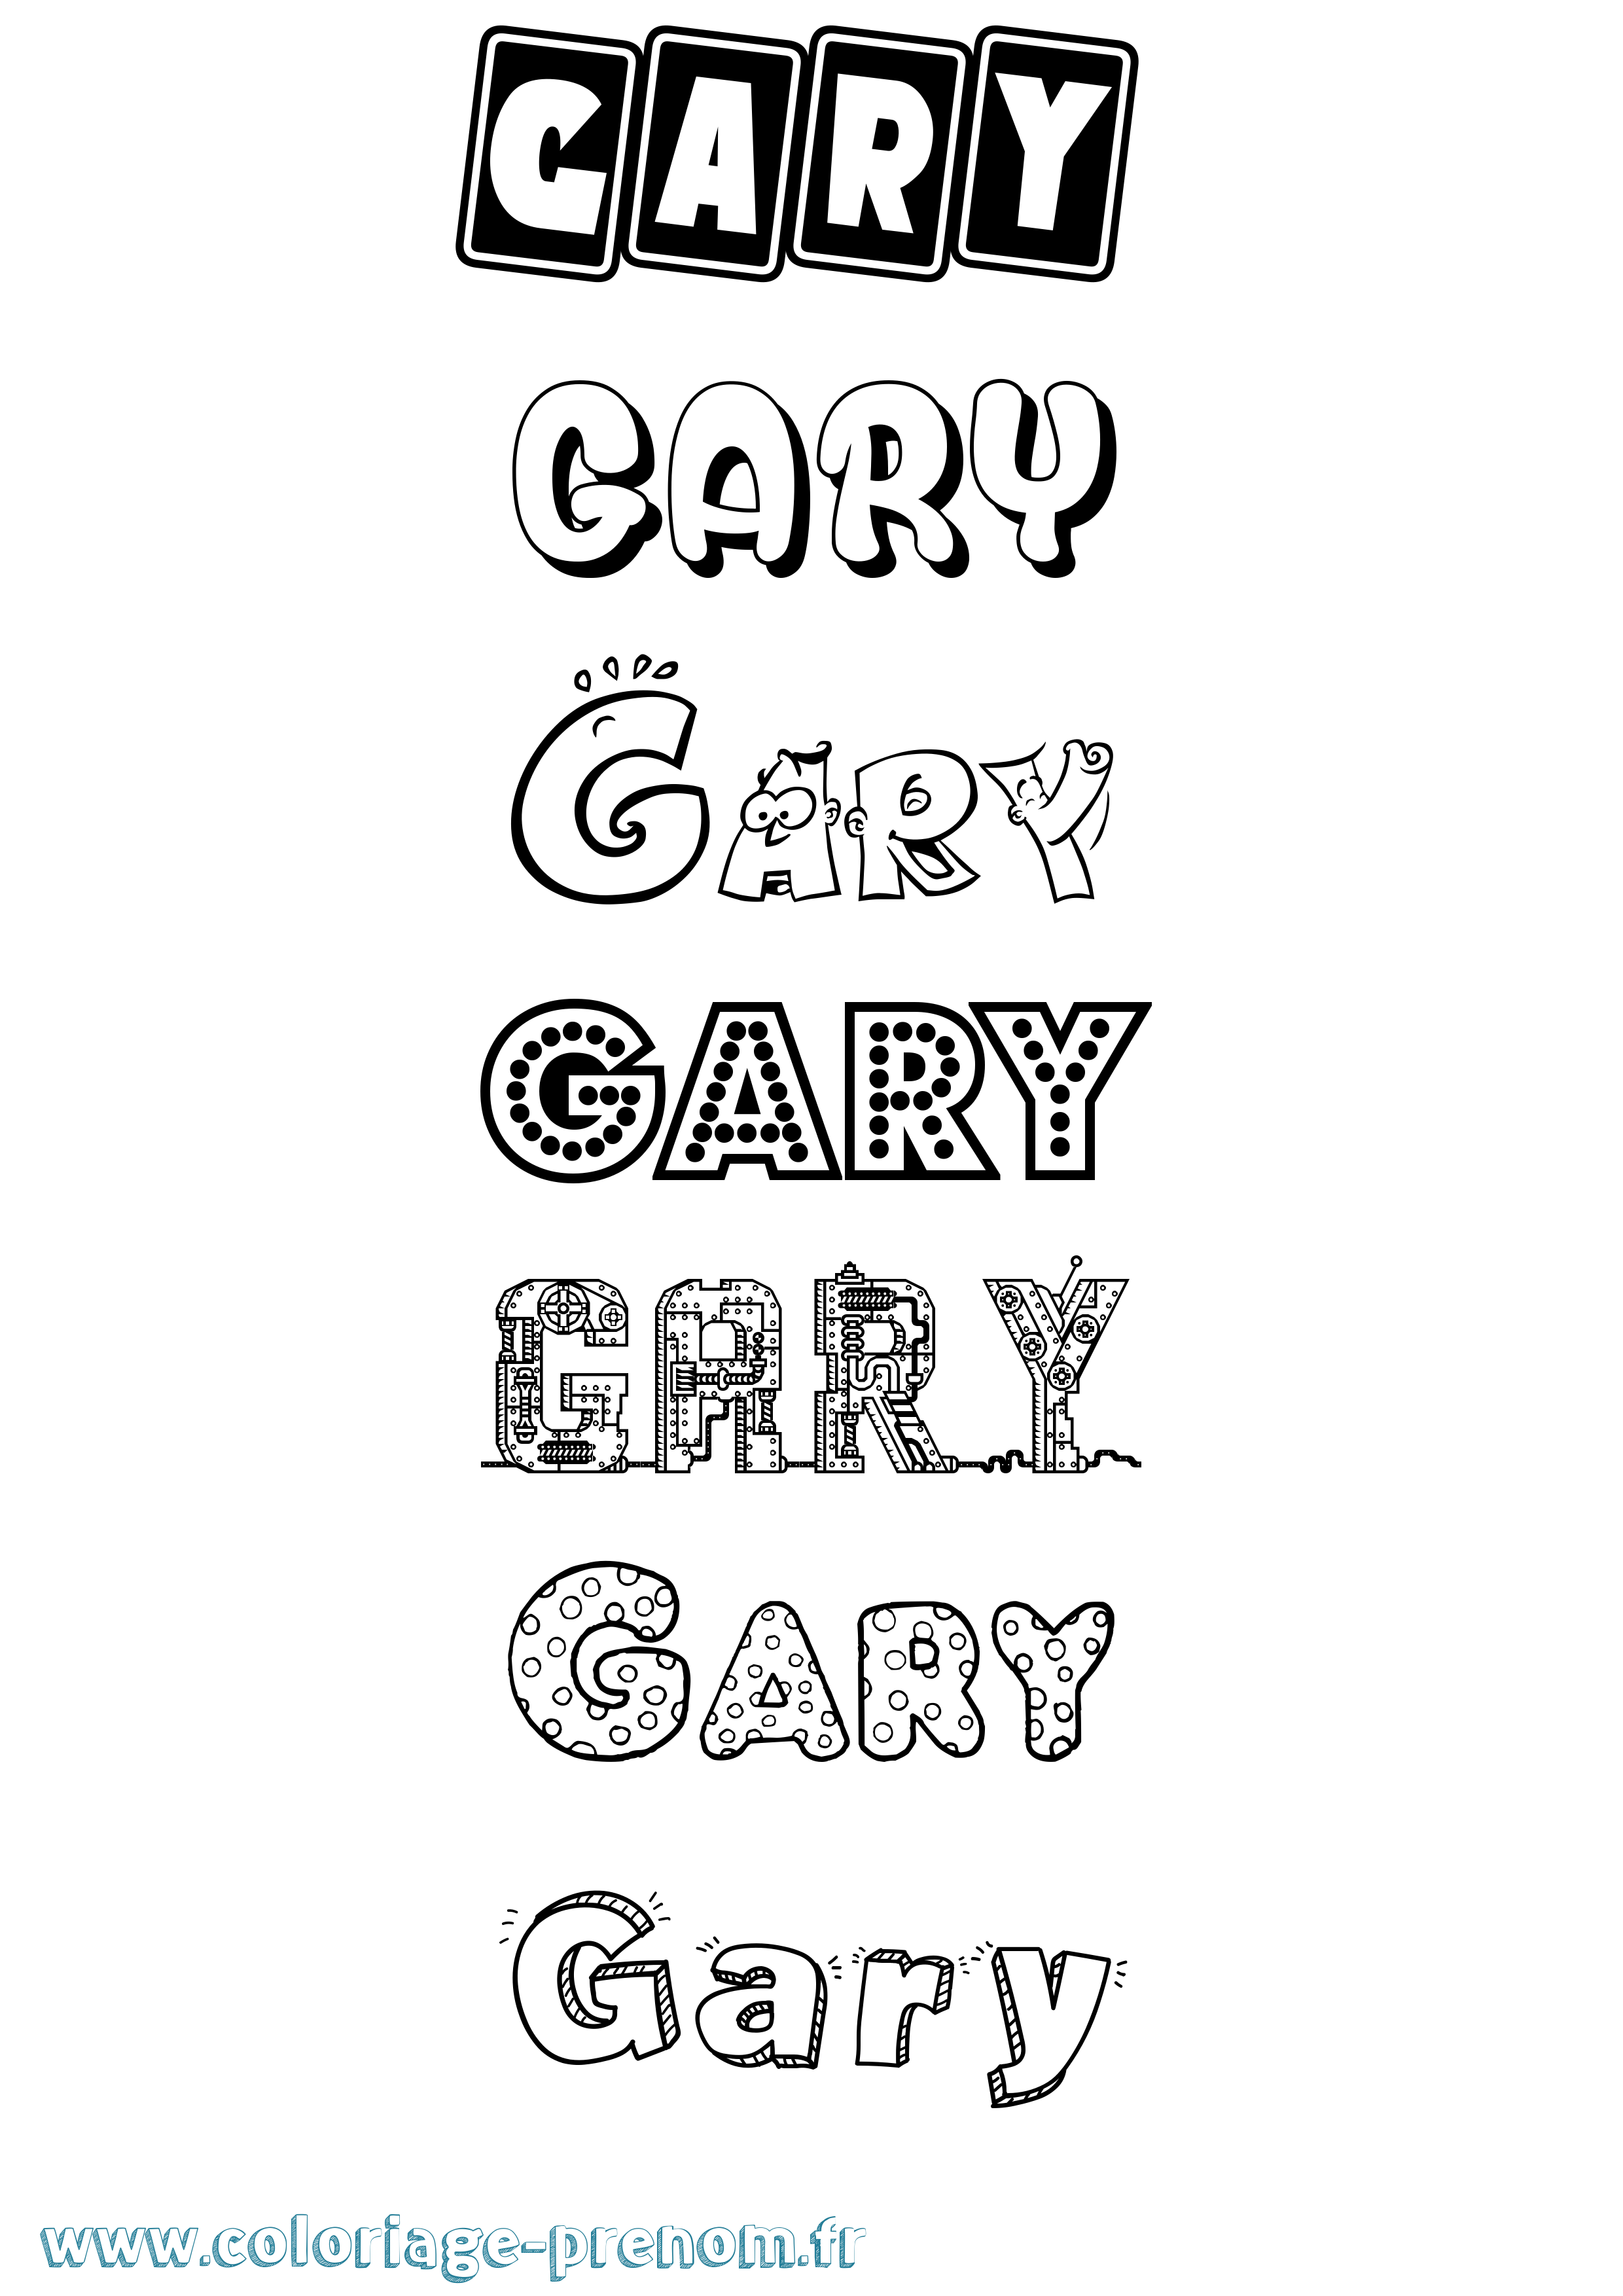 Coloriage prénom Gary Fun